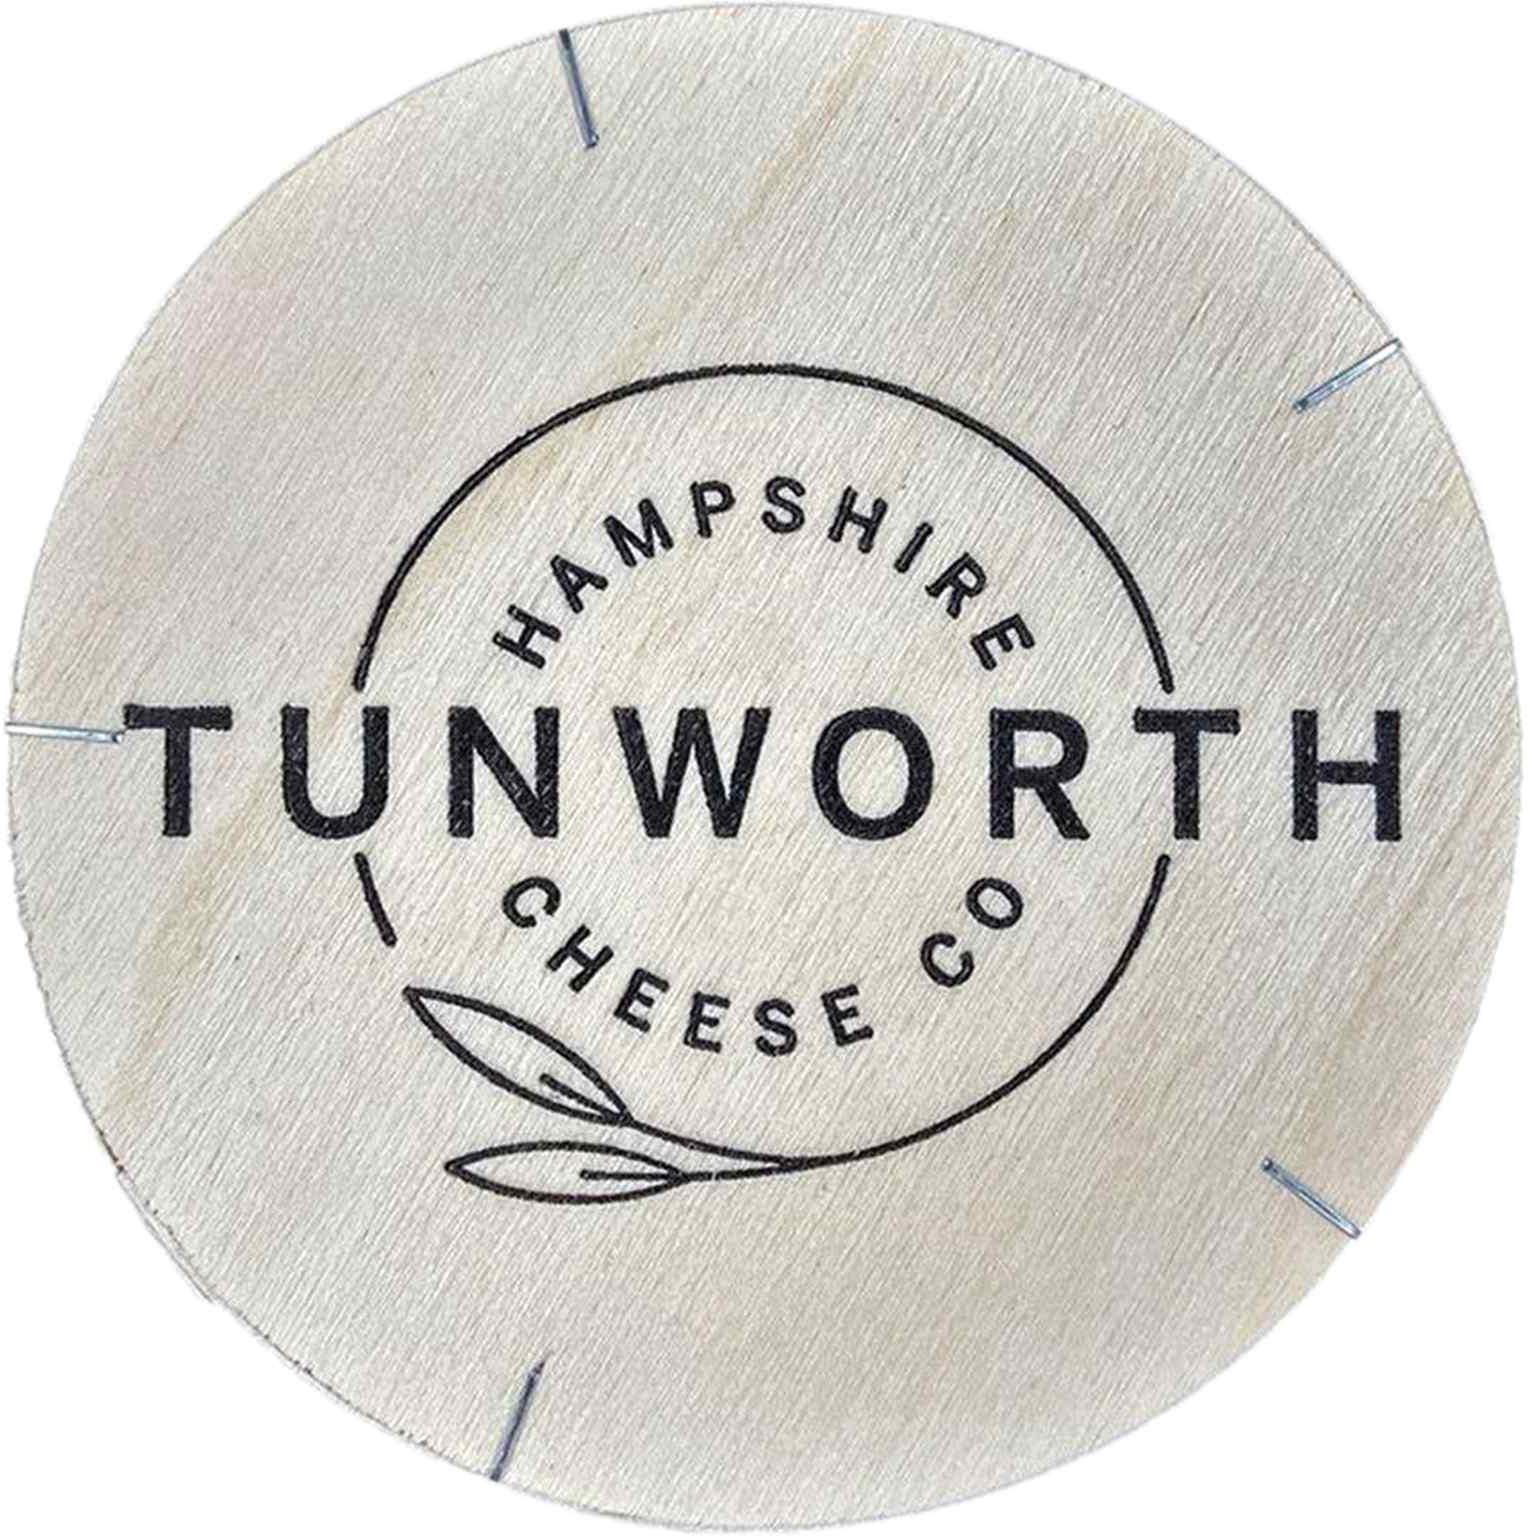 Hampshire Tunworth Soft Cheese 250g